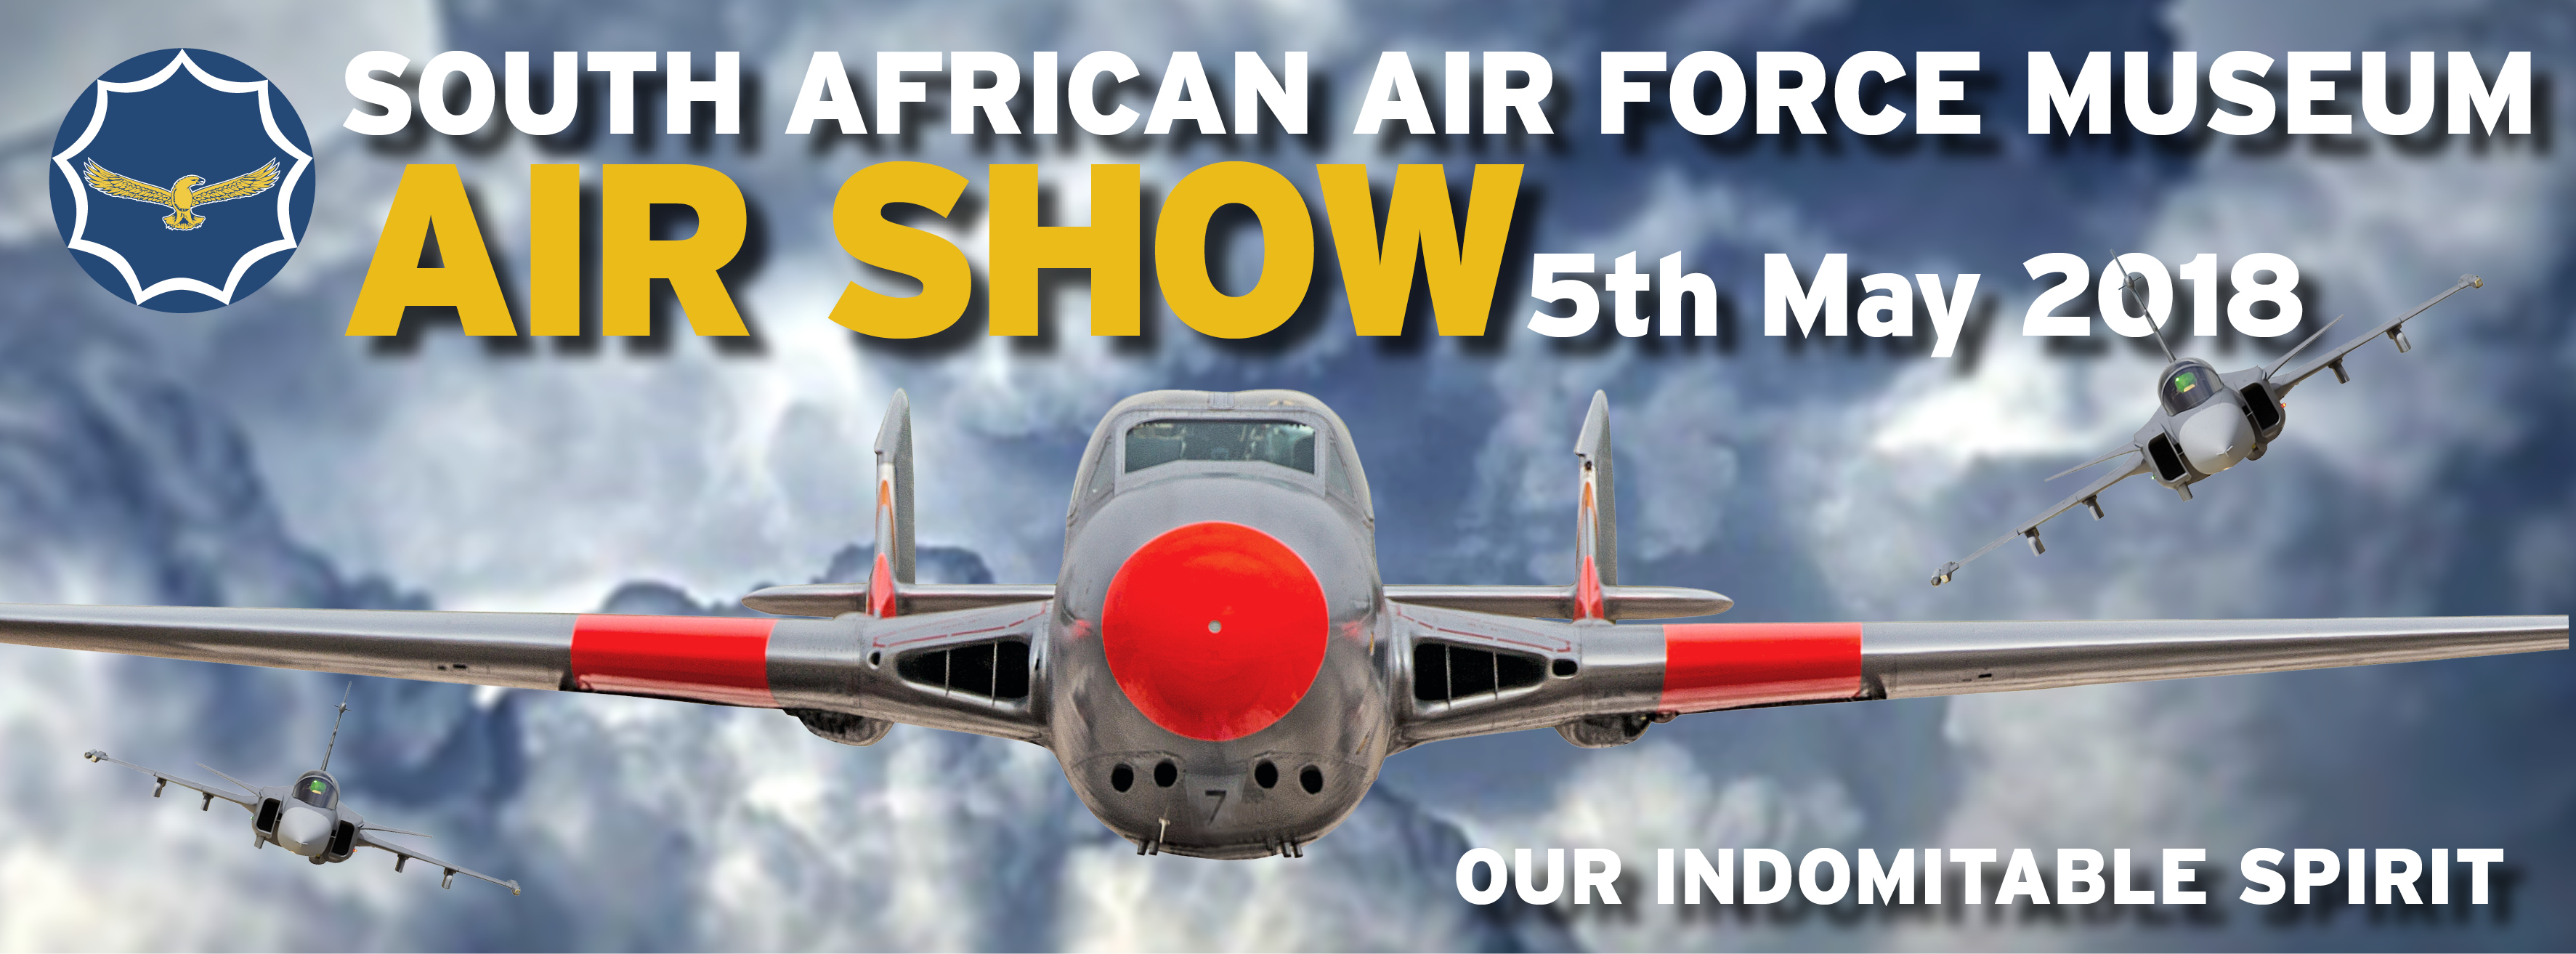 SAAF Museum Airshow (Swartkops Airshow) Aviation Central